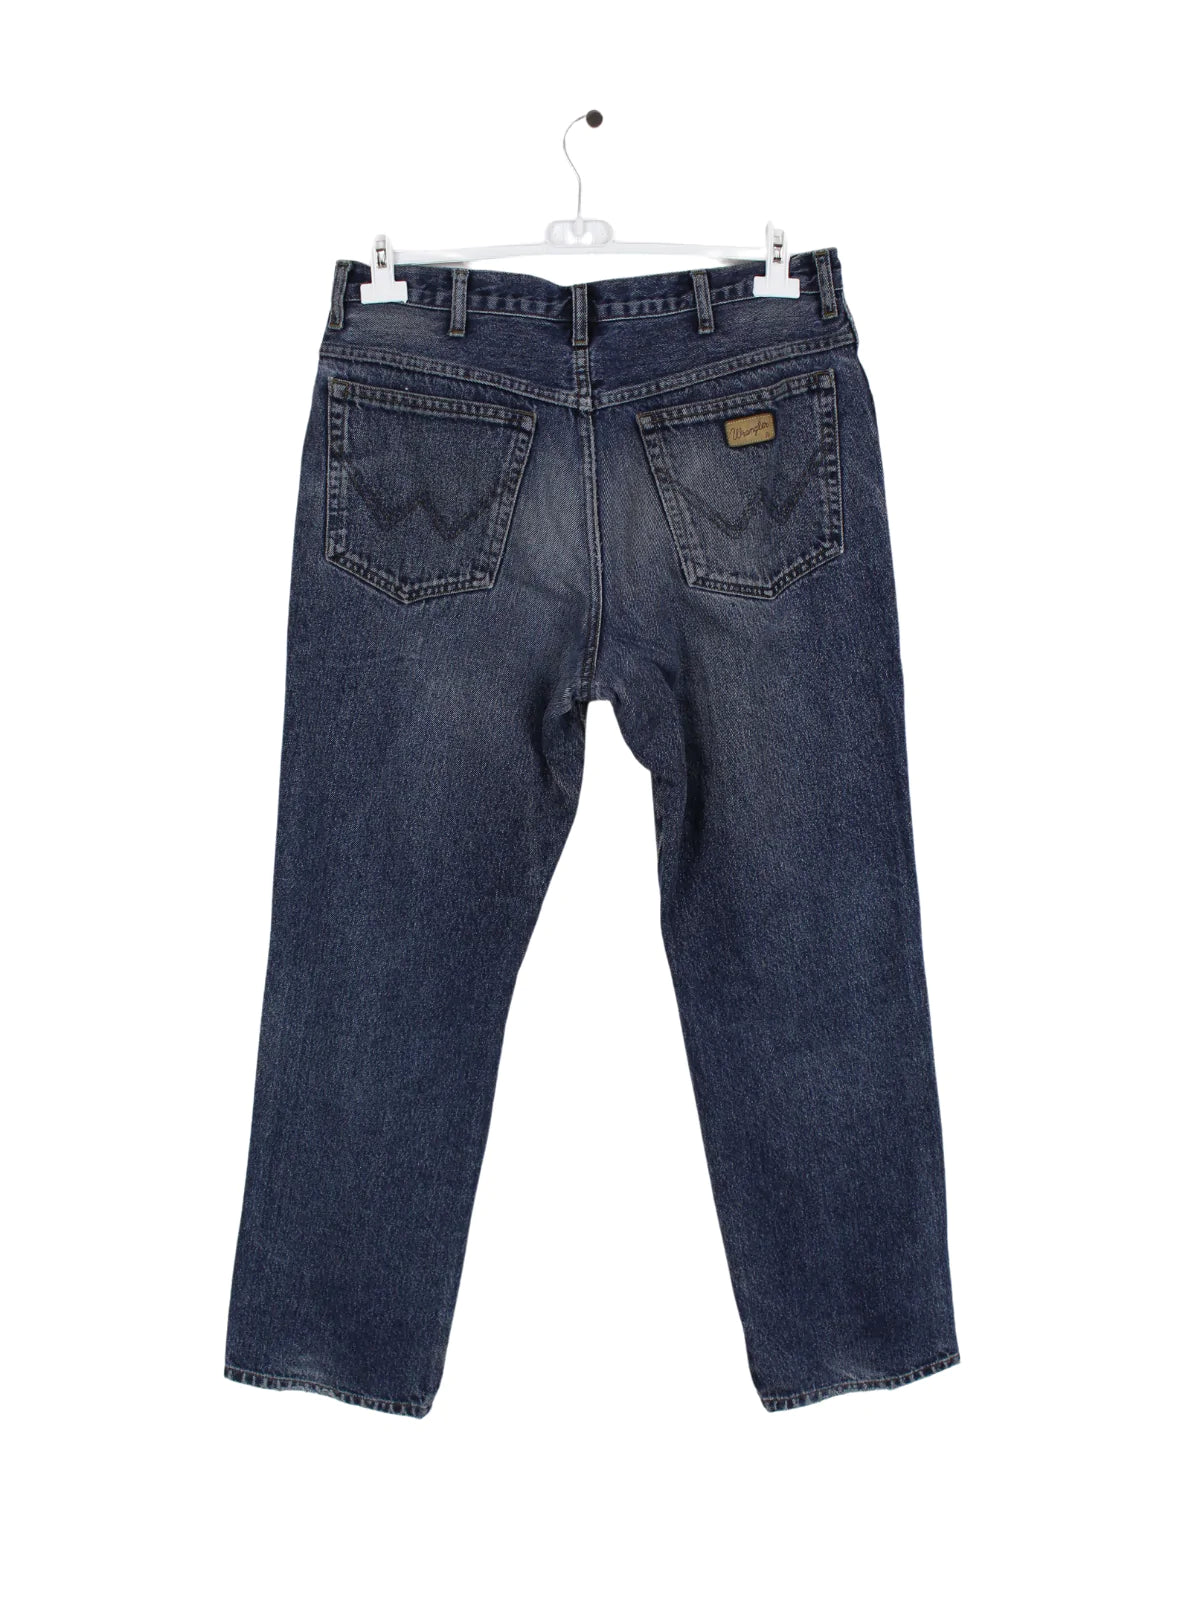 Wrangler Jeans Blau W34 L30